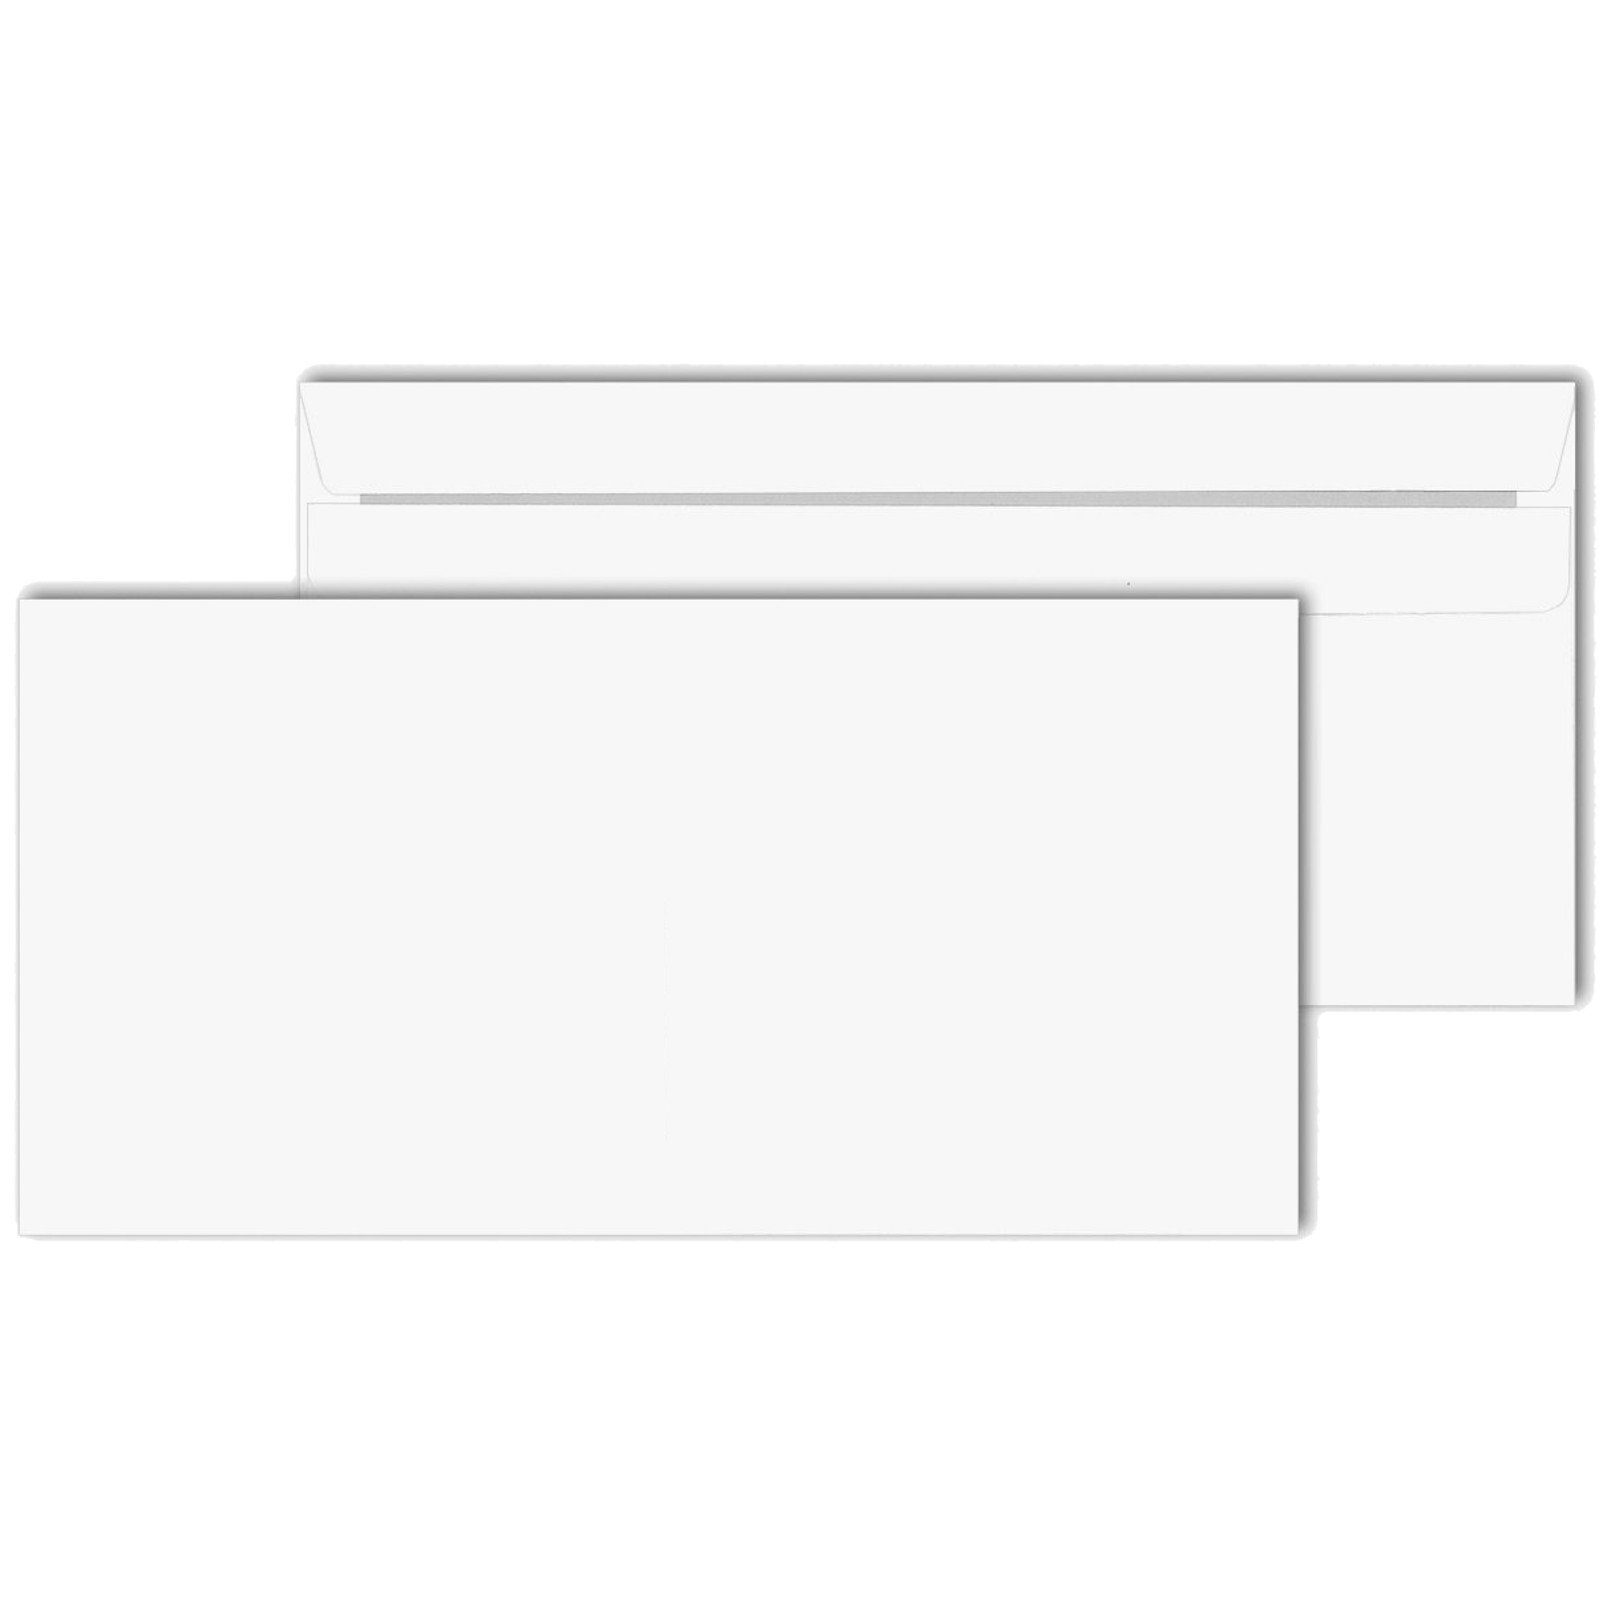 KK Verpackungen Briefumschlag, Umschlag Kuverts DIN lang 110 x 220 mm Selbstklebung ohne Fenster Weiß